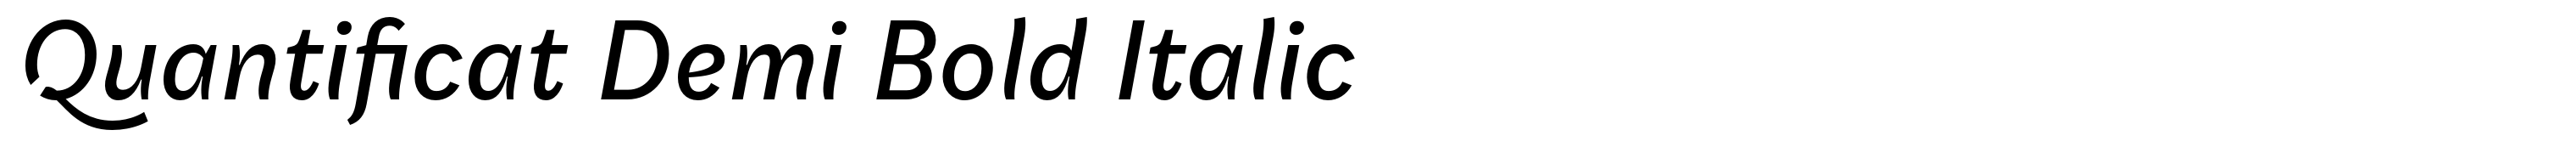 Quantificat Demi Bold Italic